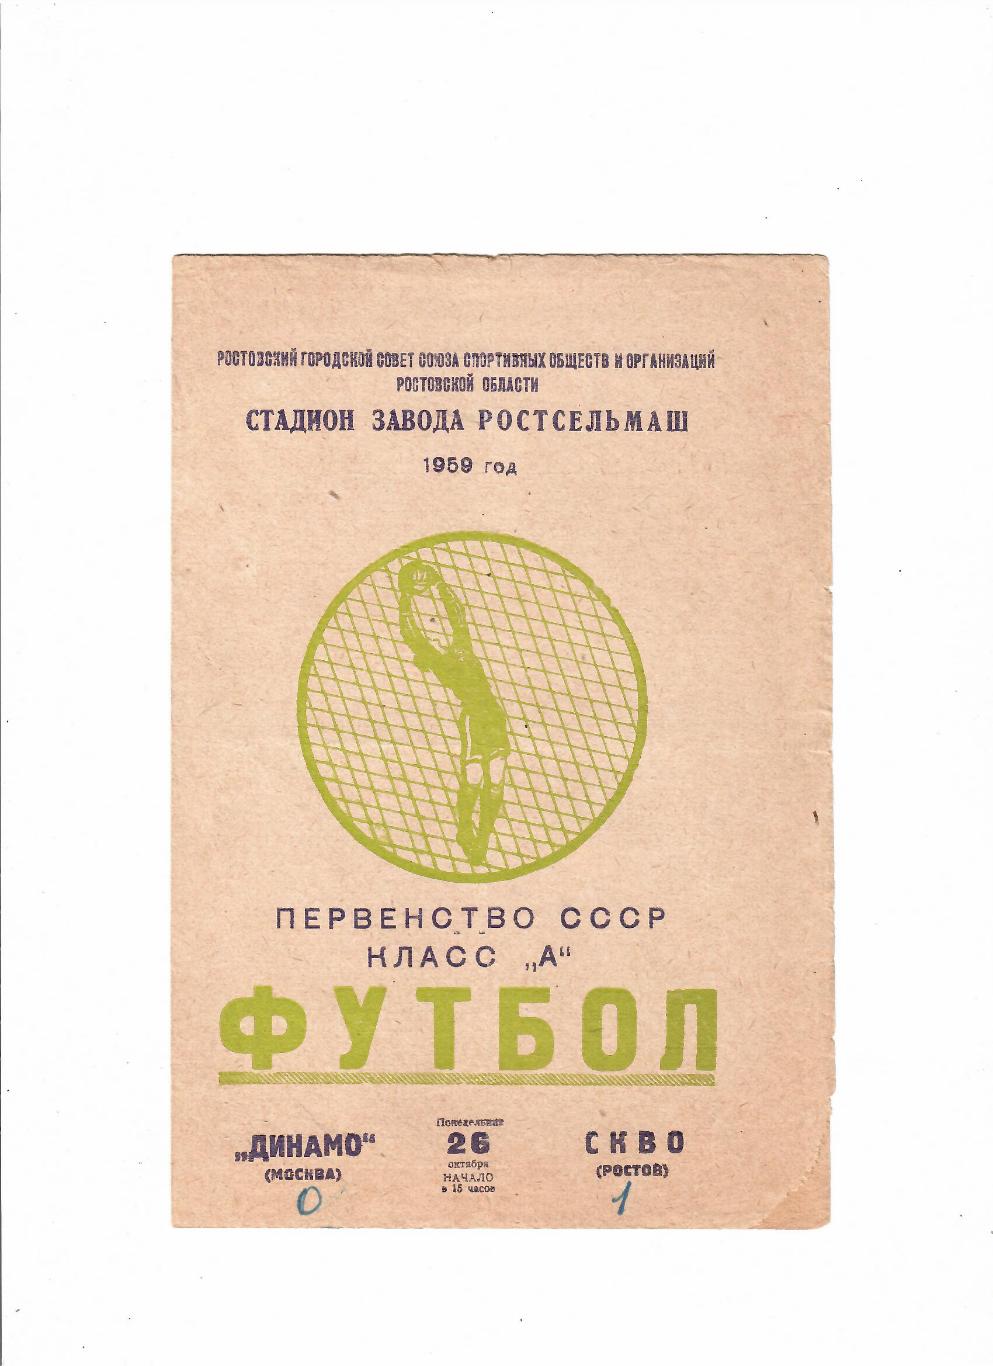 СКВО(СКА) Ростов-Динамо Москва 1959